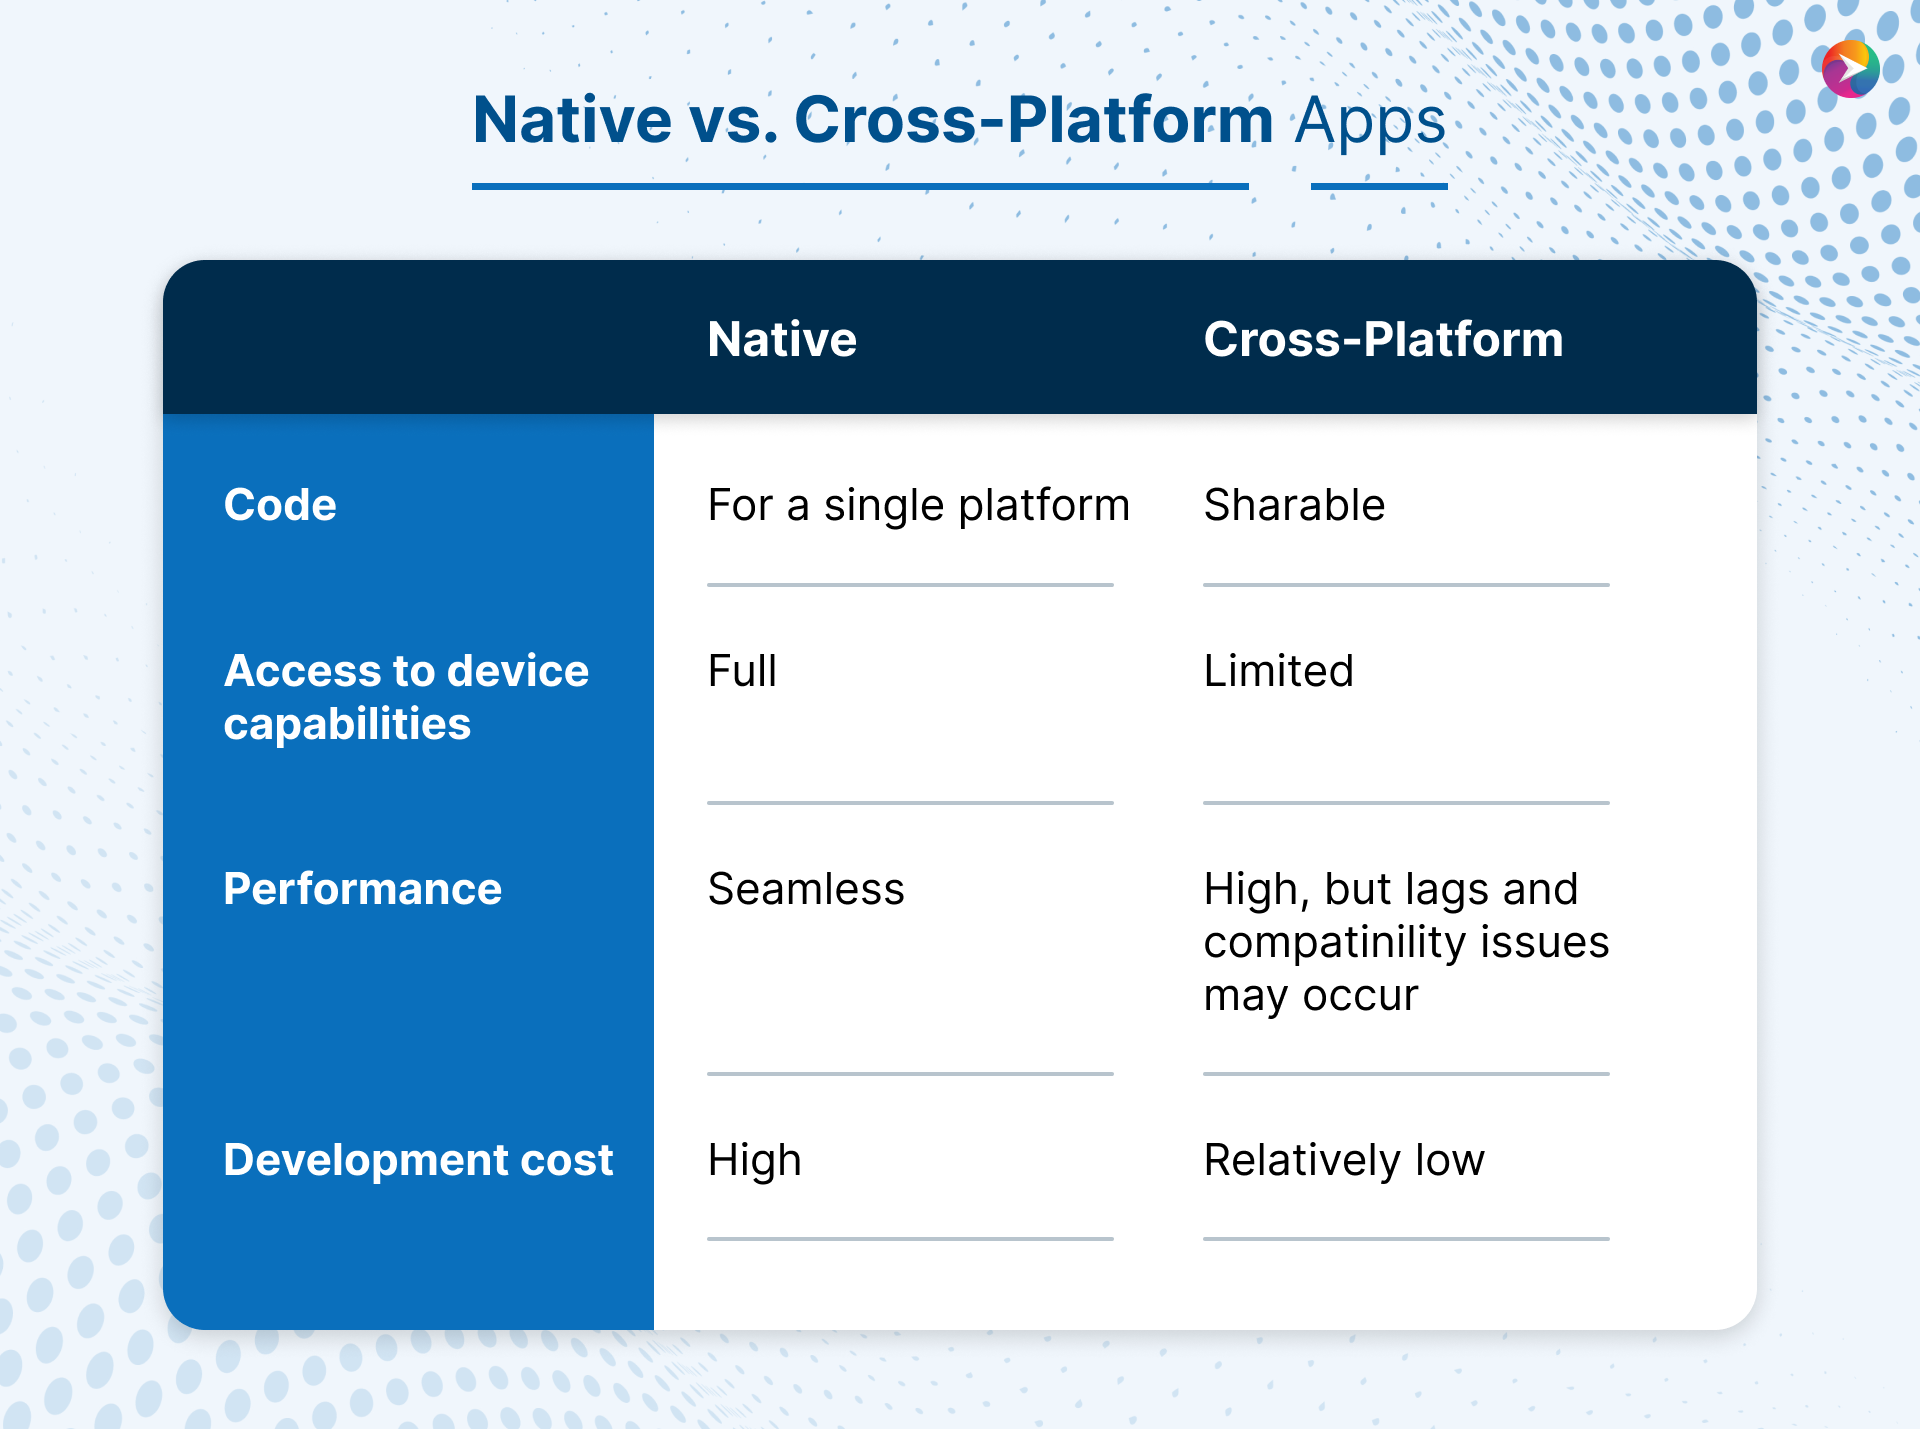 Cross-platform apps versus Native apps